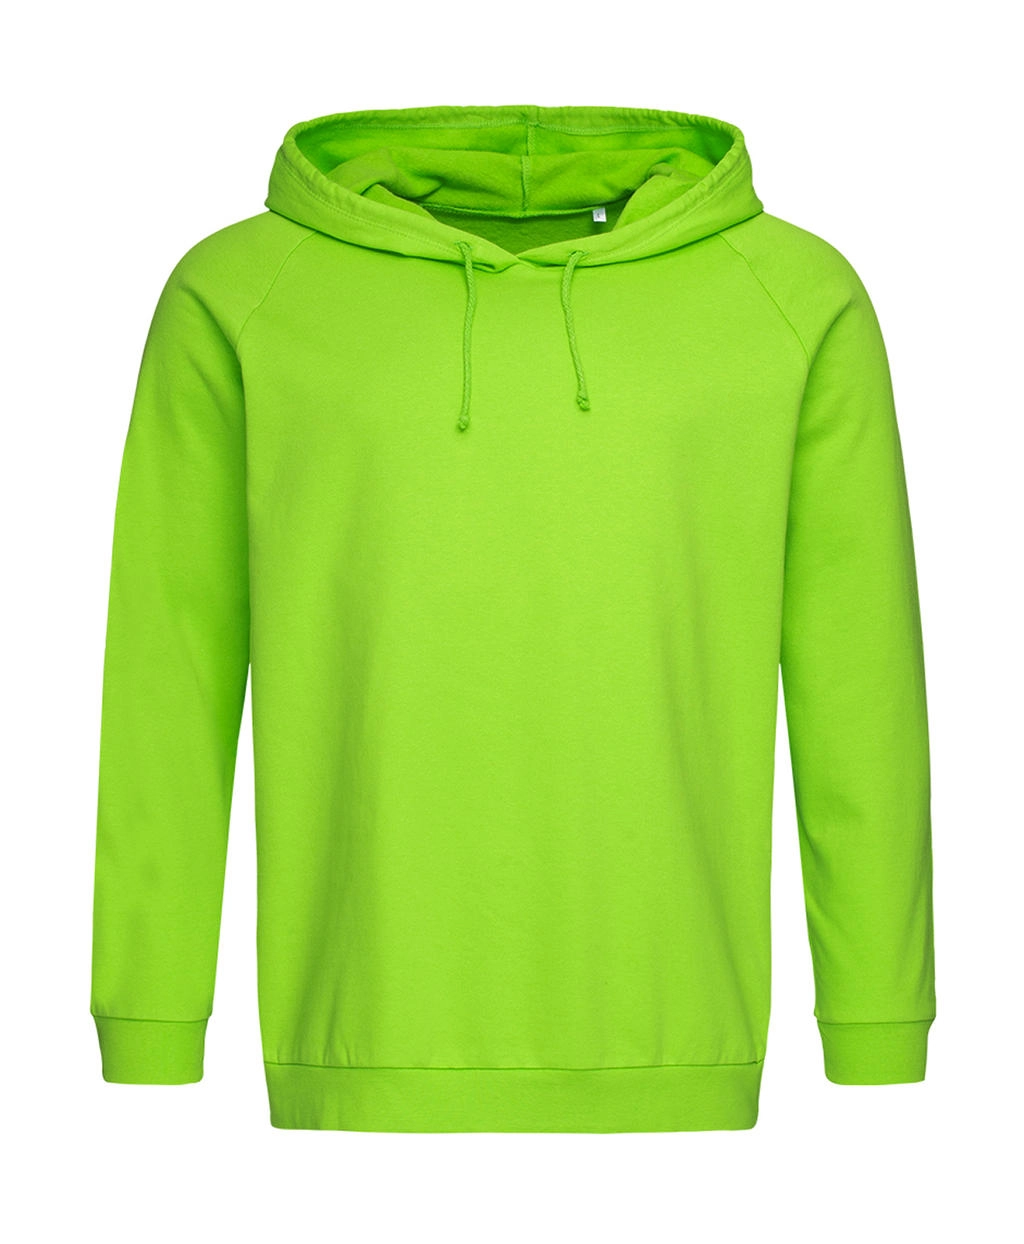 Unisex Sweat Hoodie Light zum Besticken und Bedrucken in der Farbe Kiwi Green mit Ihren Logo, Schriftzug oder Motiv.